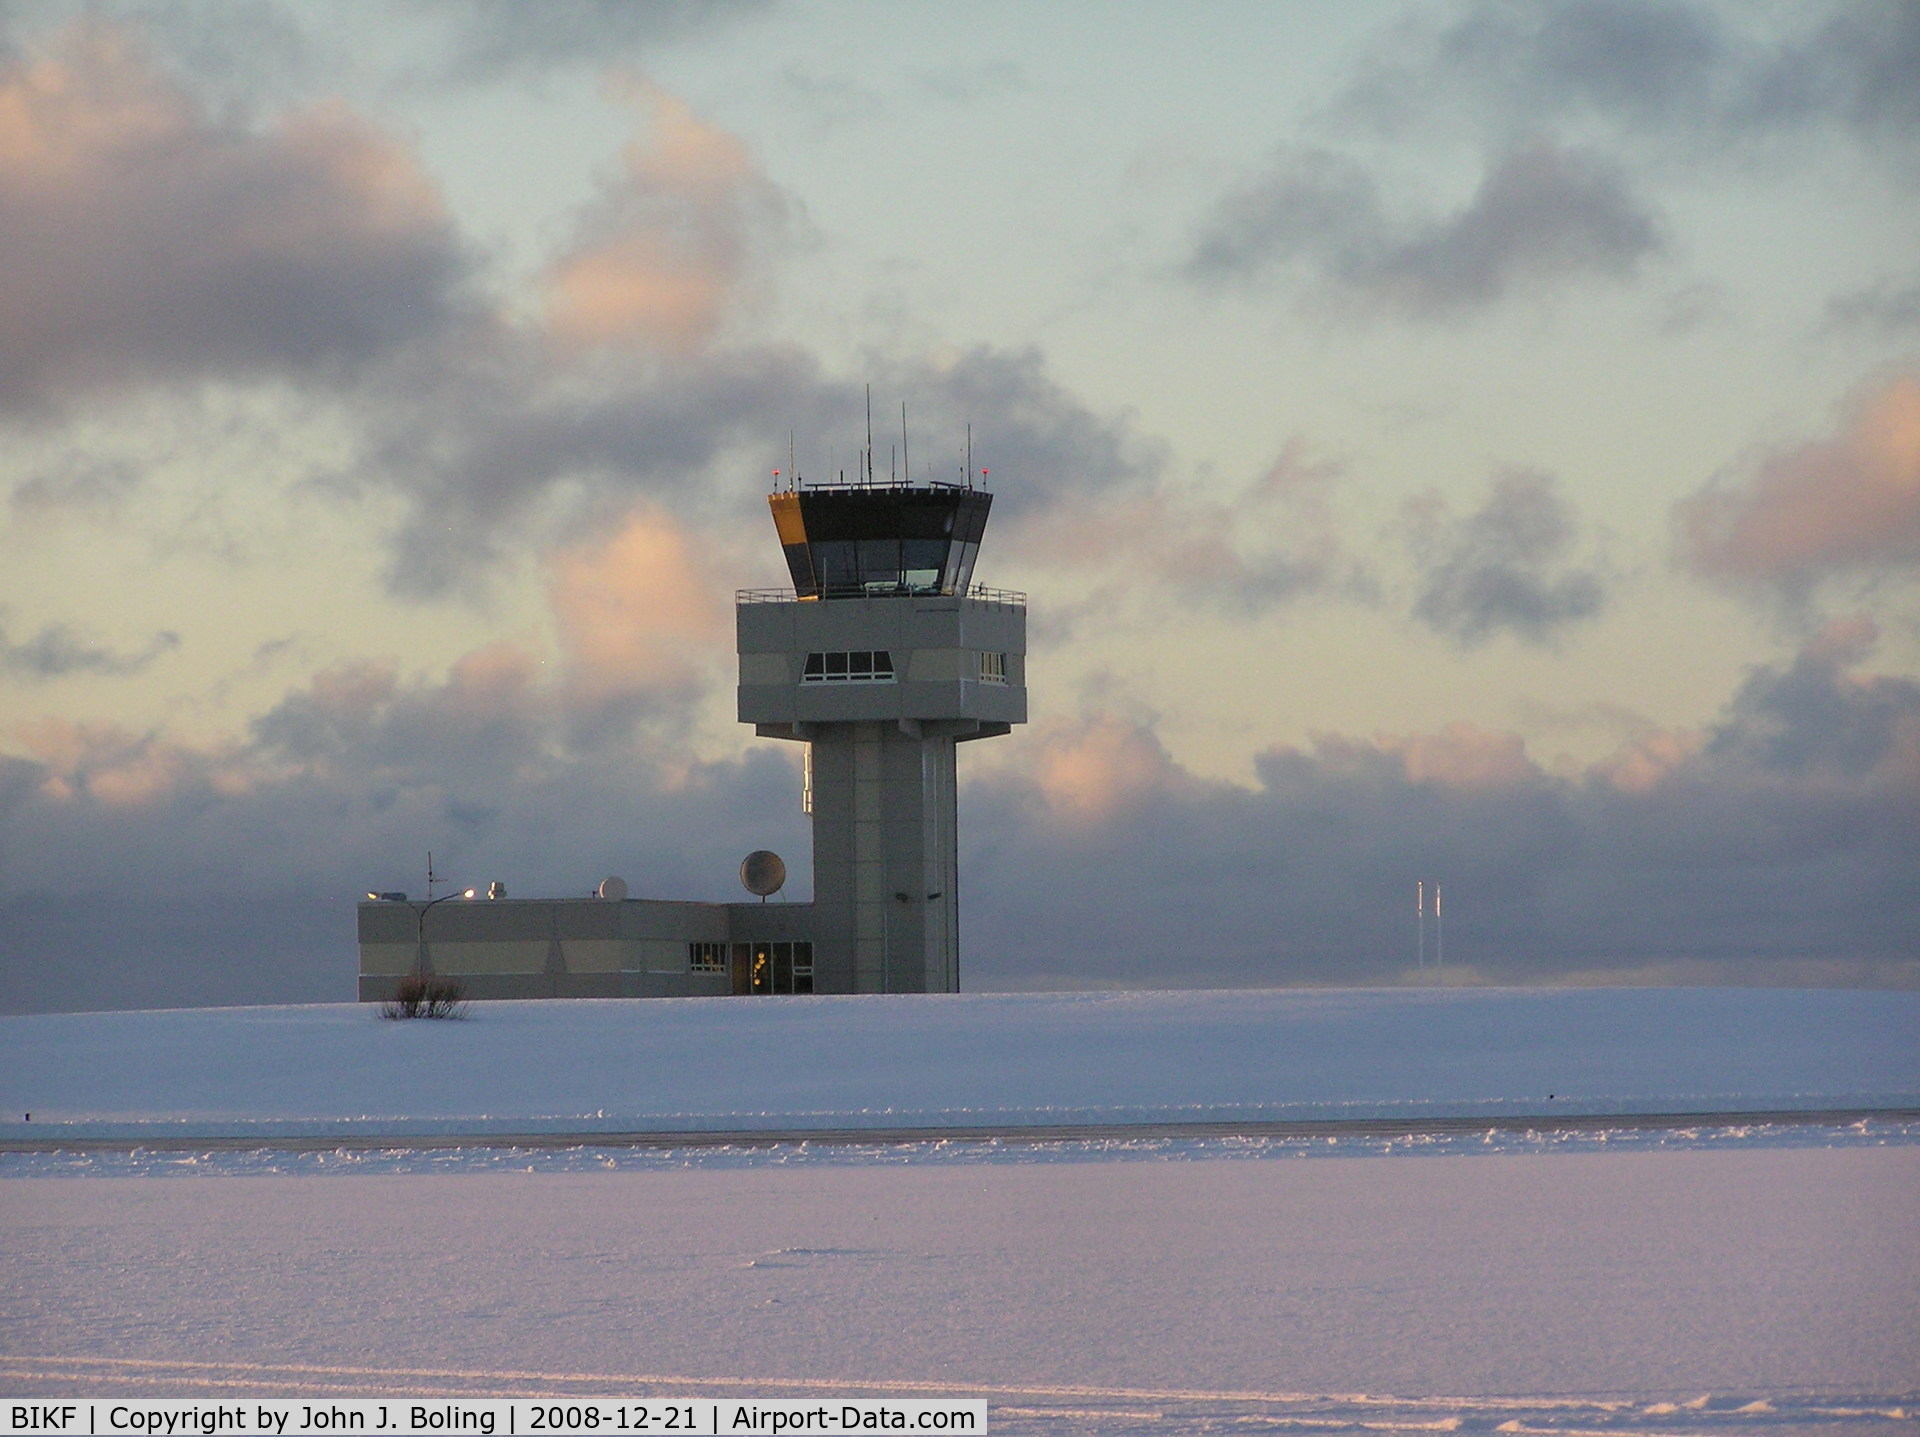 Keflavík International Airport (Flugstöð Leifs Eiríkssonar), Keflavík Iceland (BIKF) - Control Tower at Keflavik on the shortest day of the year. Sunrise 1120; Sunset 1532.